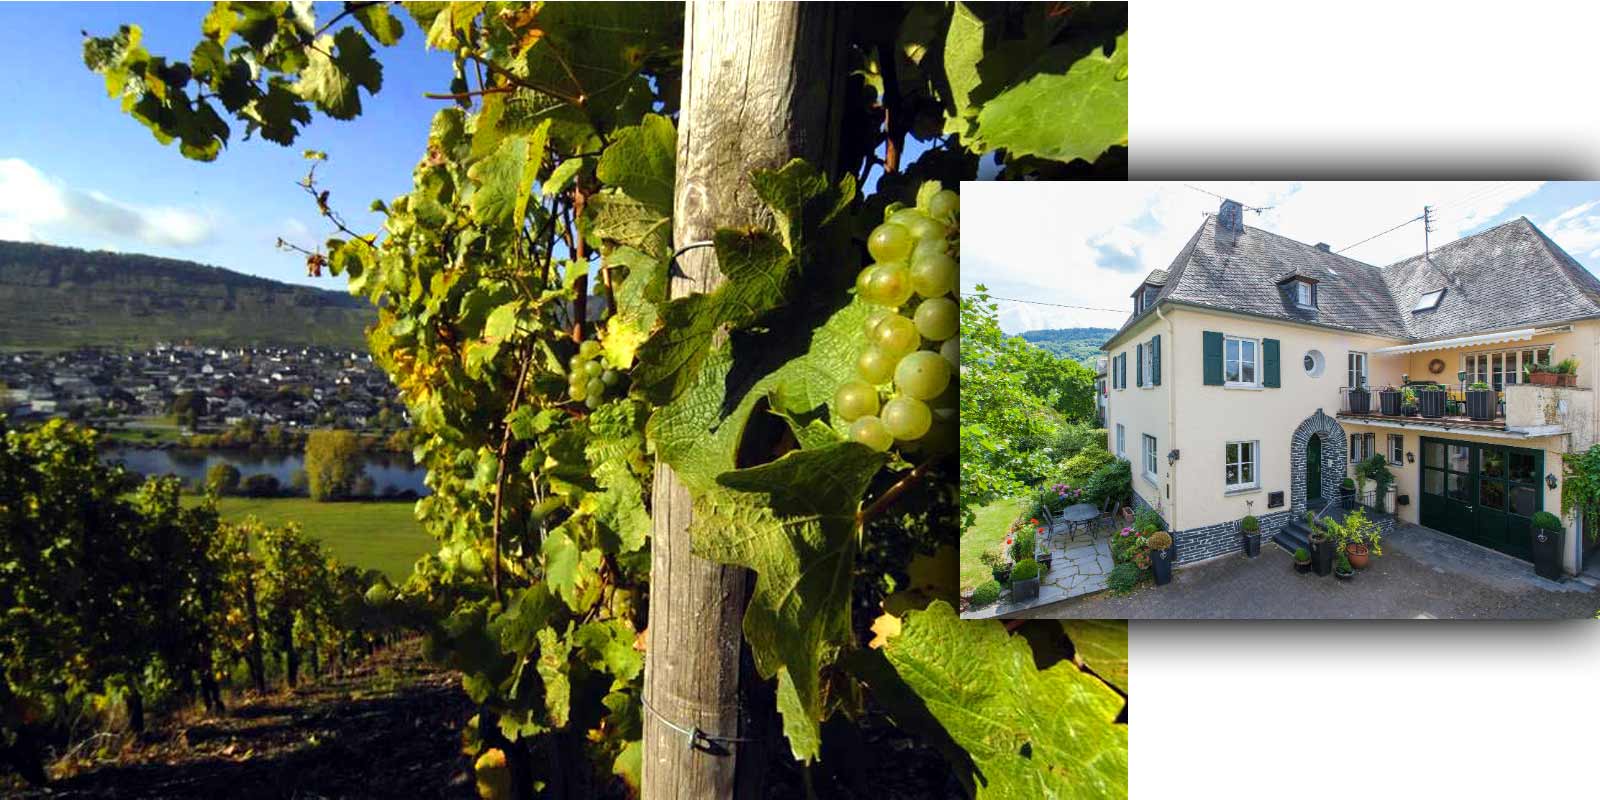 Domaine Grans-Fassien - Region viticole de Moselle Gerhard Grans a repris l`exploitation viticole de son pere Matthias en 1982 et a etendu la superficie du vignoble de 4 hectares a 9,5 hectares aujourd`hui, dont 88 % sont plantes de Riesling, 10 % de Pinot Blanc et 2 % de Pinot Gris. Les meilleurs emplacements de la cave sont egalement des emplacements classes : ils sont classes dans la categorie de culture la plus elevee.